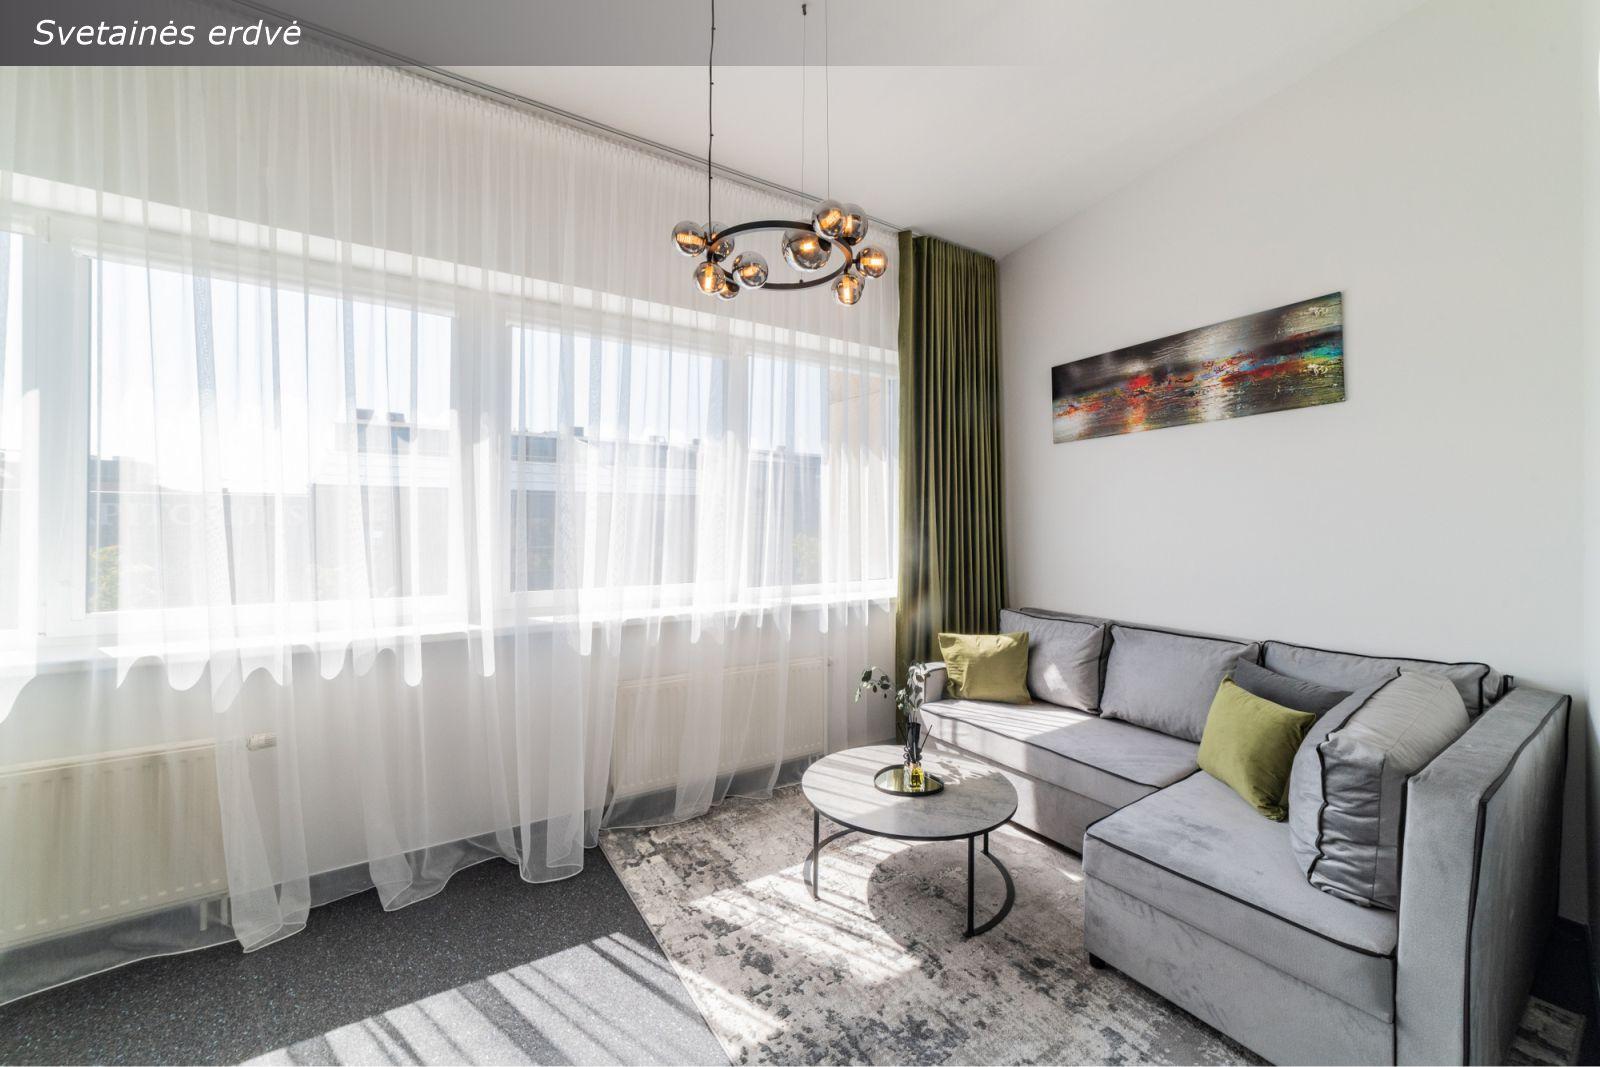 Klaipėdos miesto centre parduodami modernūs loftinio tipo 2 kambarių išskirtiniai apartamentai su požeminiu parkingu — H. Manto g. 40!